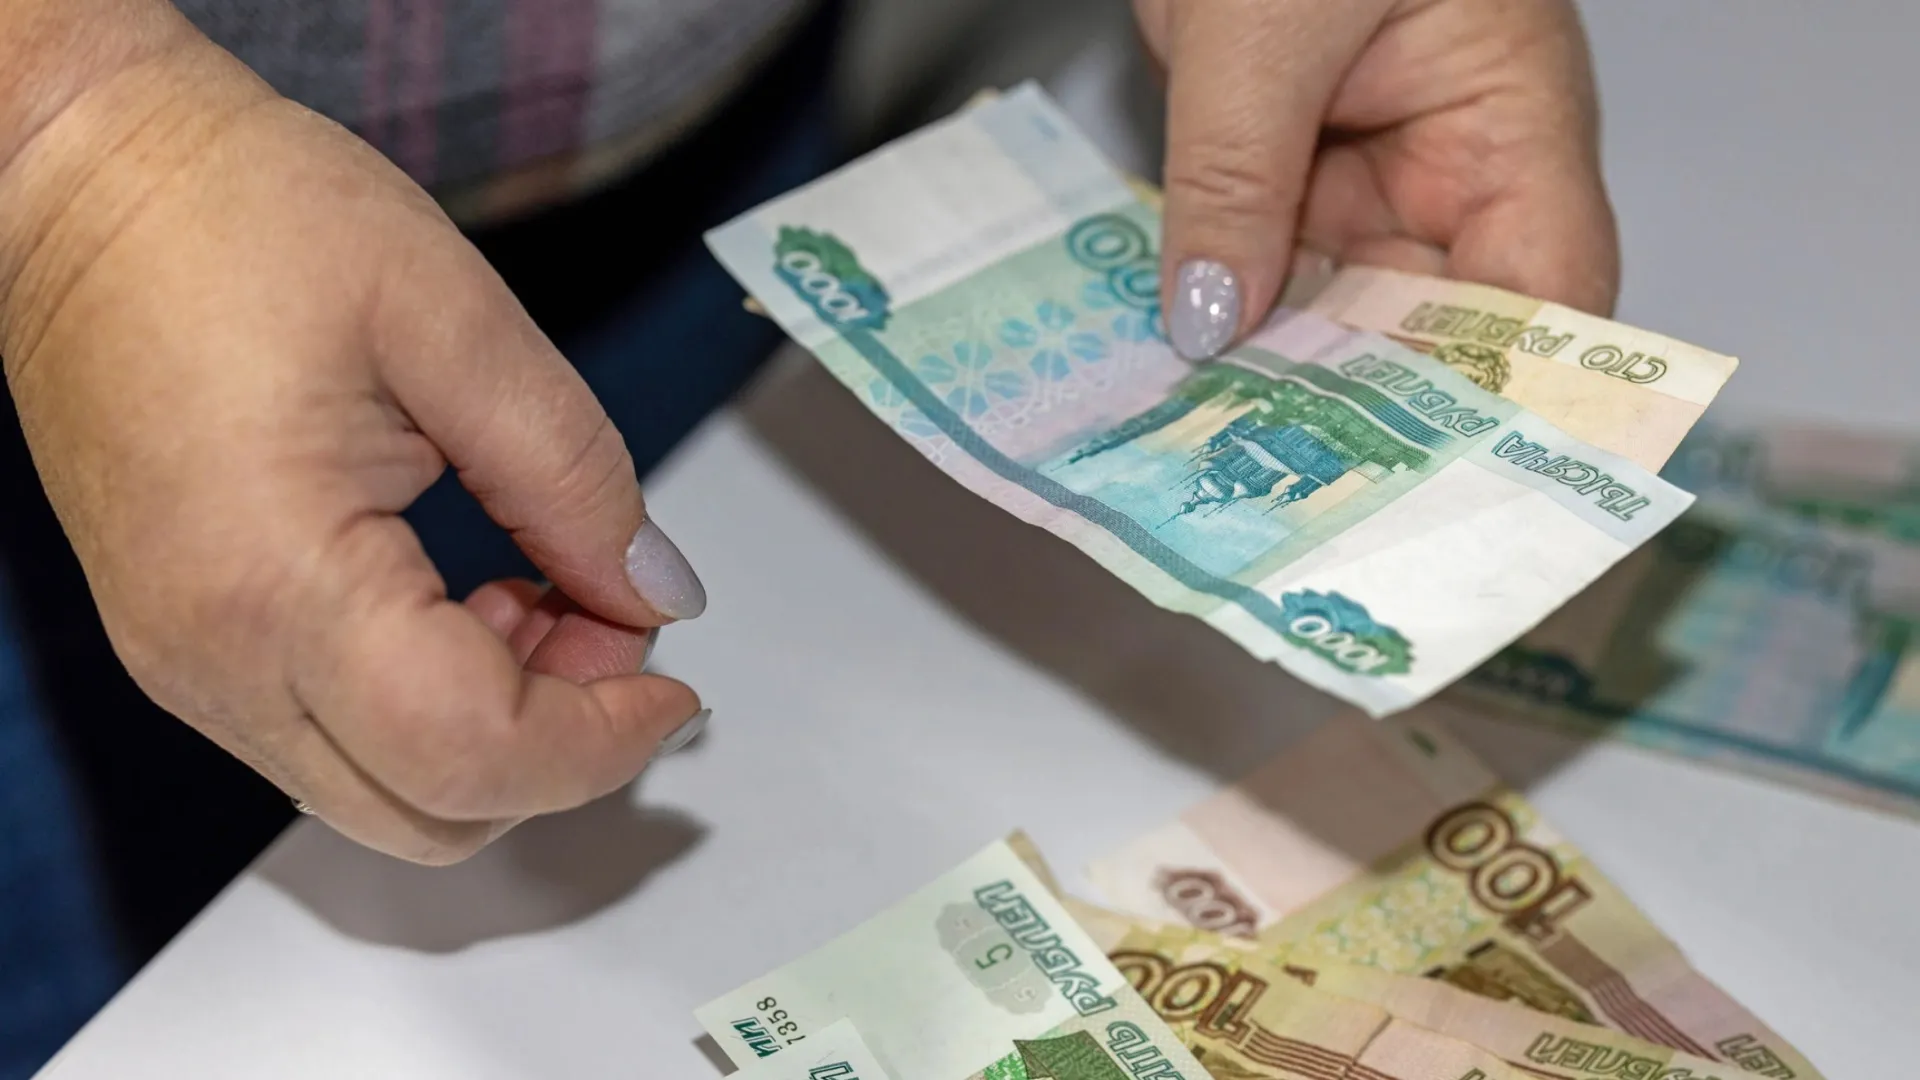 Пособия уже отправлены, скоро банки зачислят их на счета ямальцев. Фото: Федор Воронов / «Ямал-Медиа»